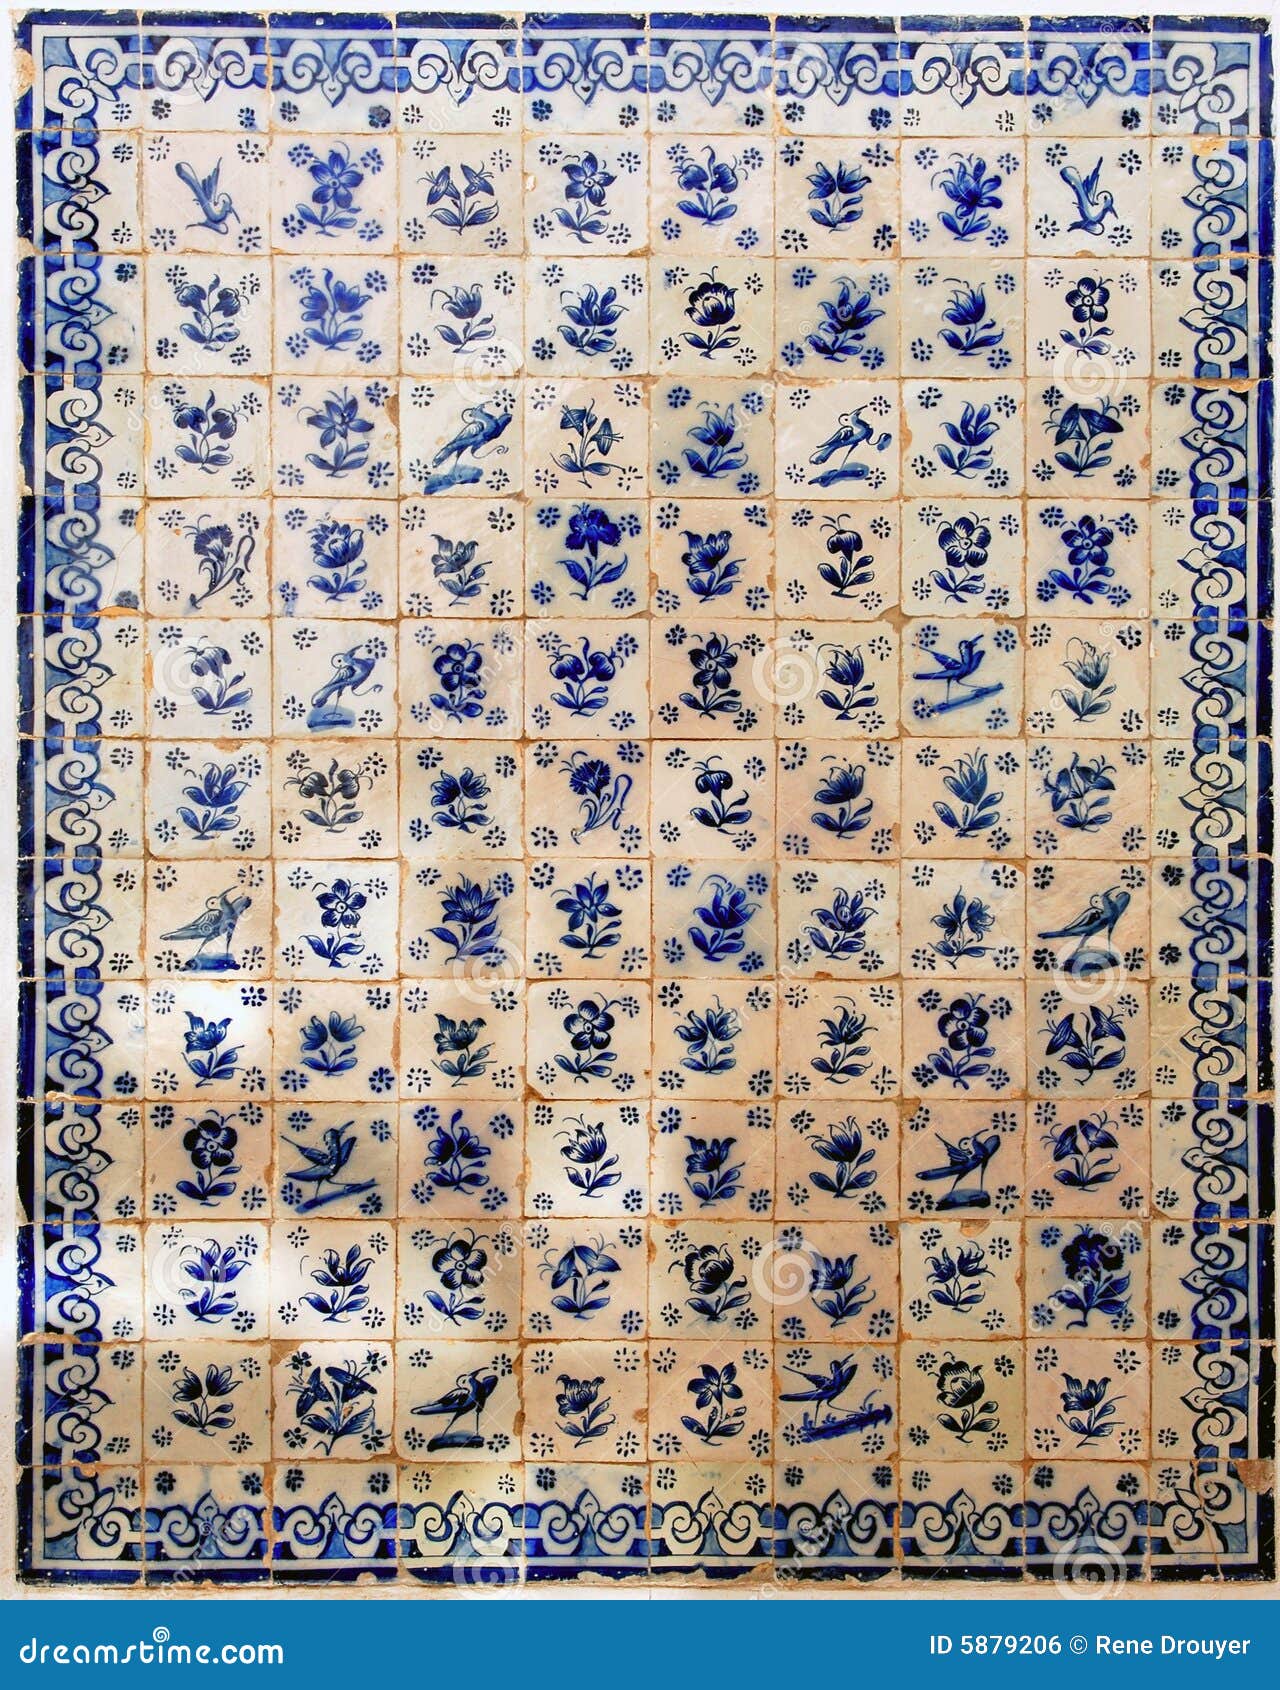 portugal obidos; decoration on a wall, azulejos